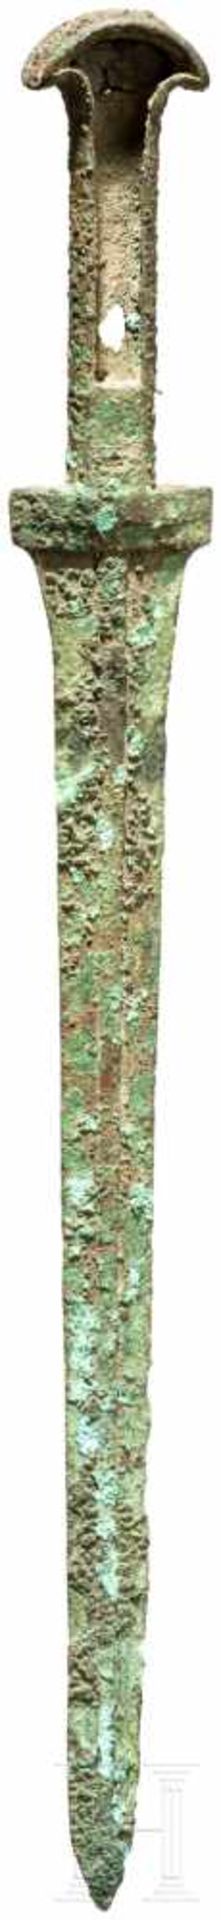 Randleistendolch, Luristan, 11. - 10. Jhdt. v. Chr.Bronze. Schmale, lange Klinge mit starker